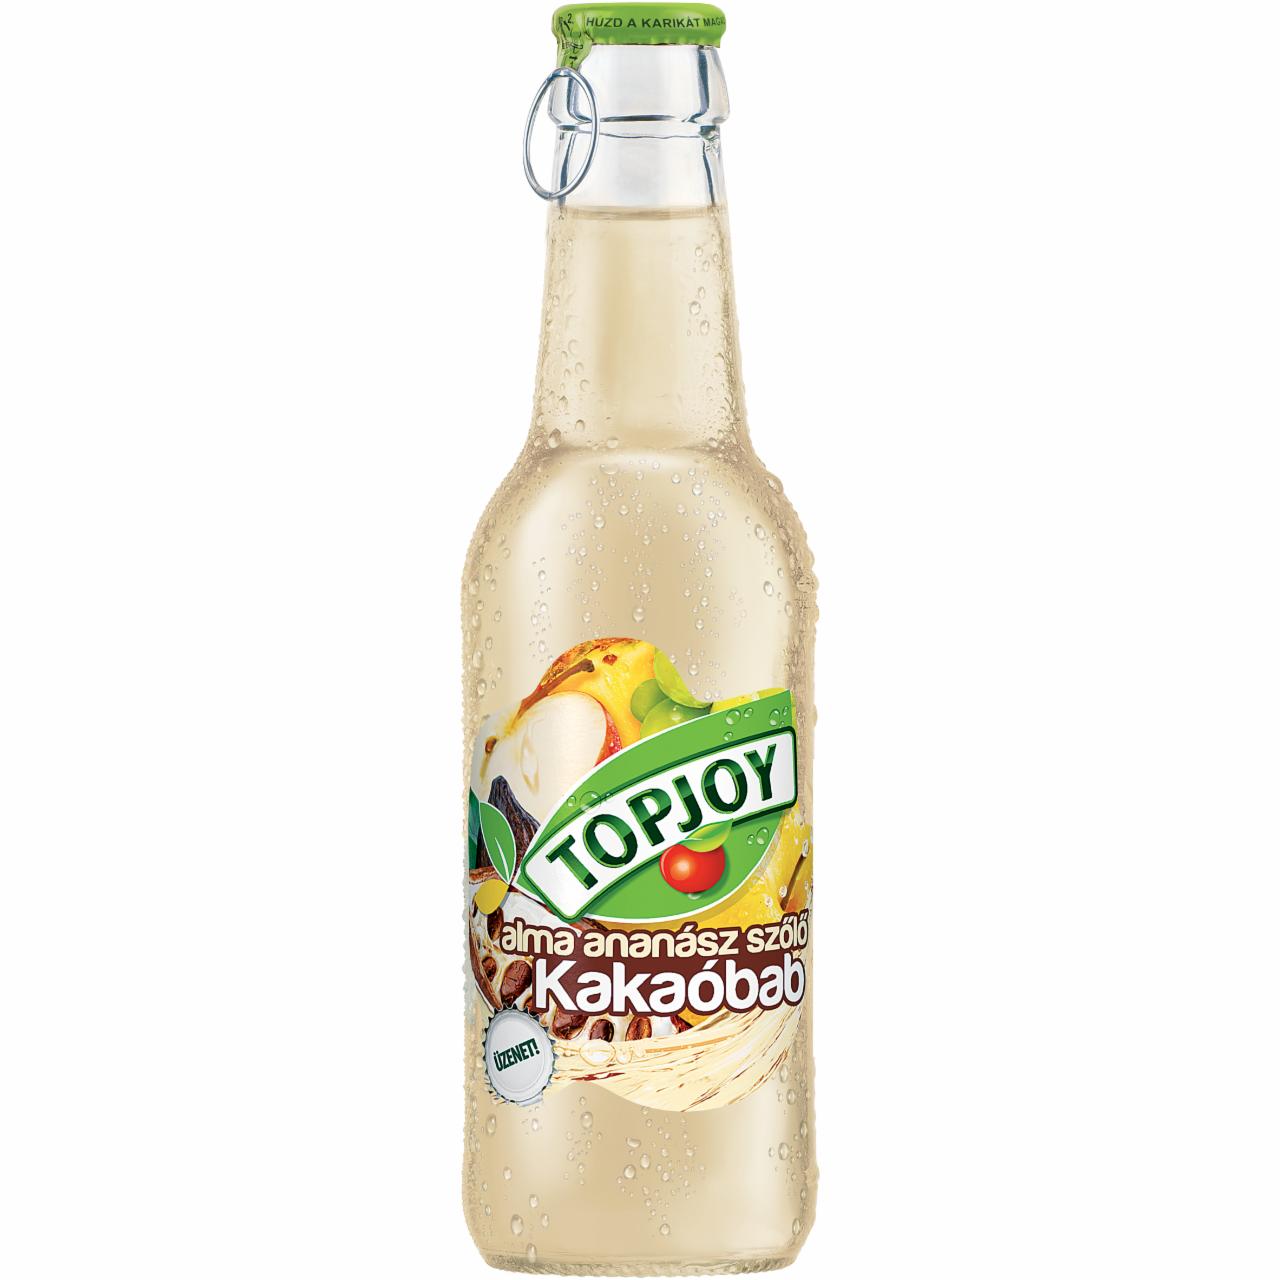 Képek - Topjoy alma-ananász-szőlő ital kakaó kivonattal 250 ml